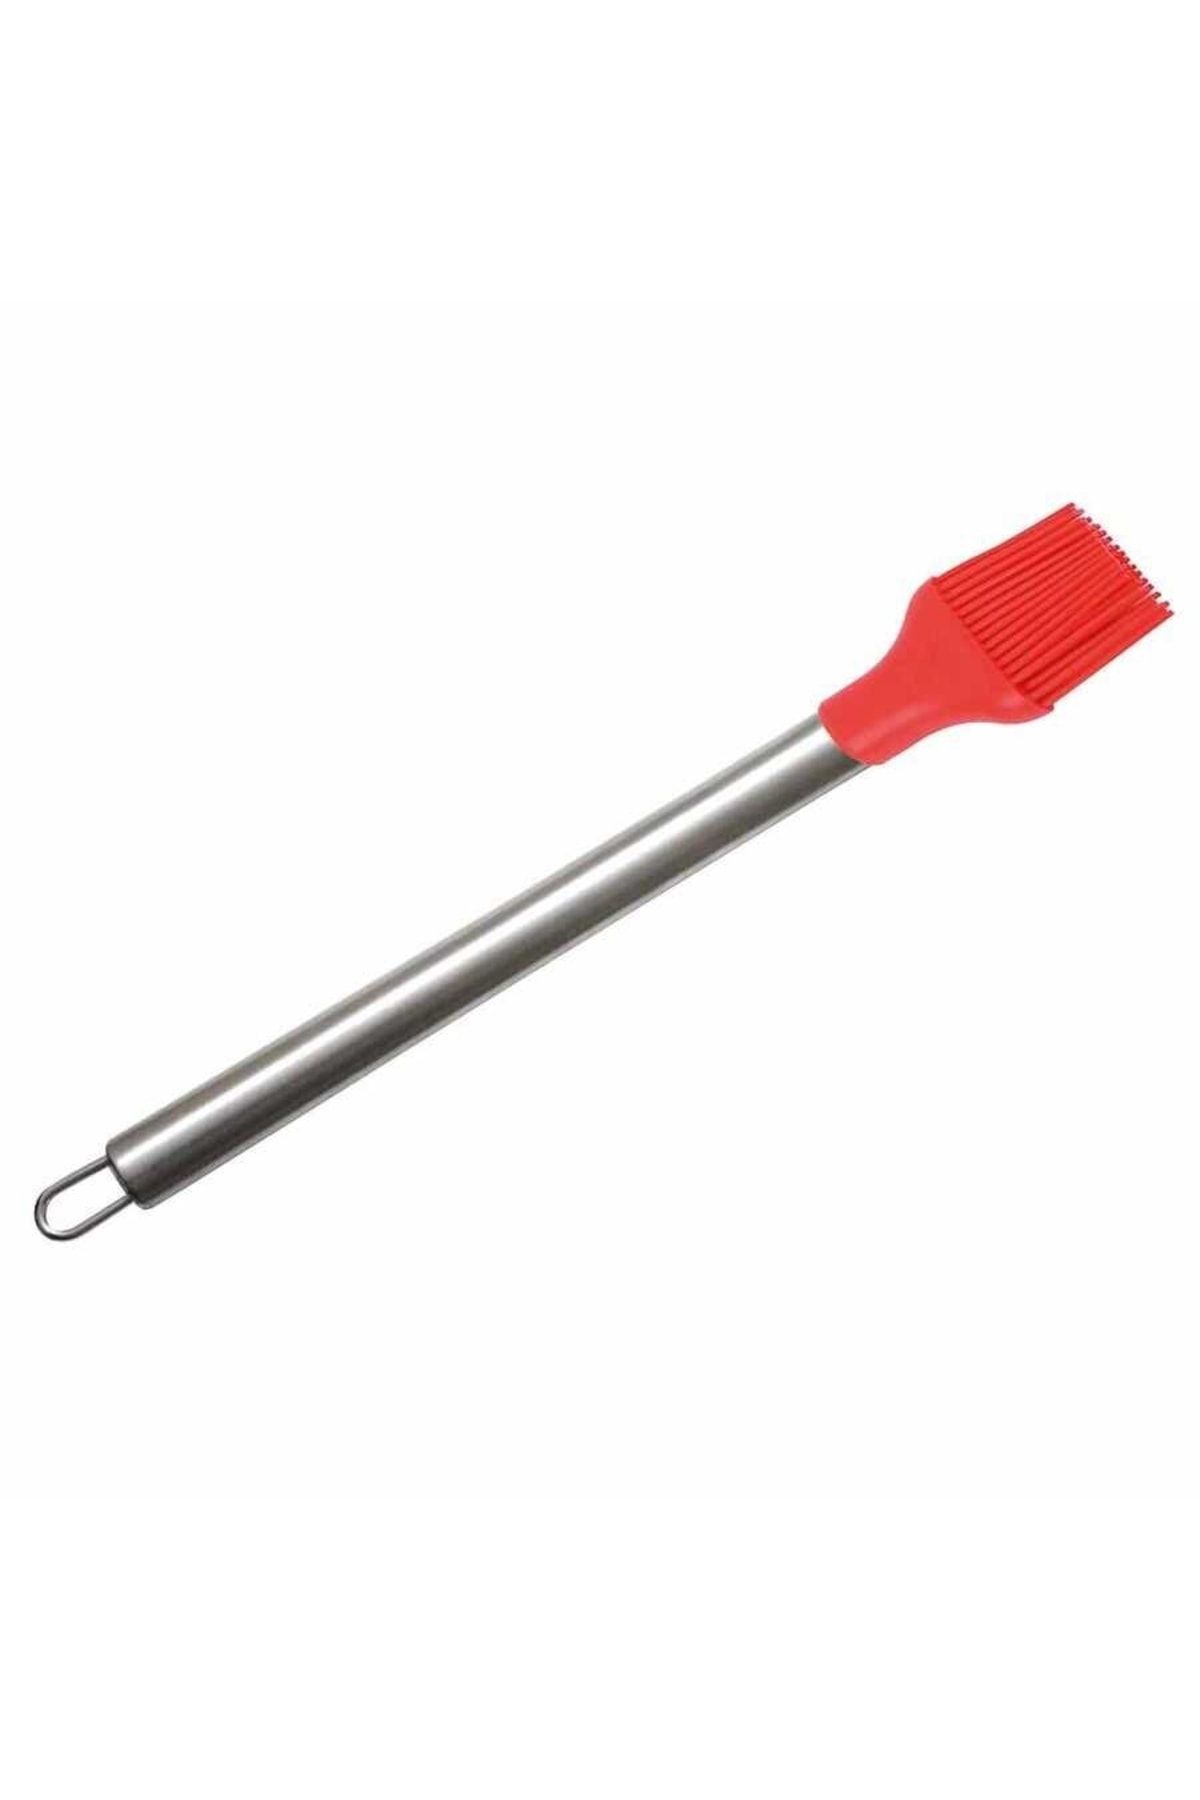 Epinox Silikon Fırça-çelik Sap Kırmızı (csk-25) - V